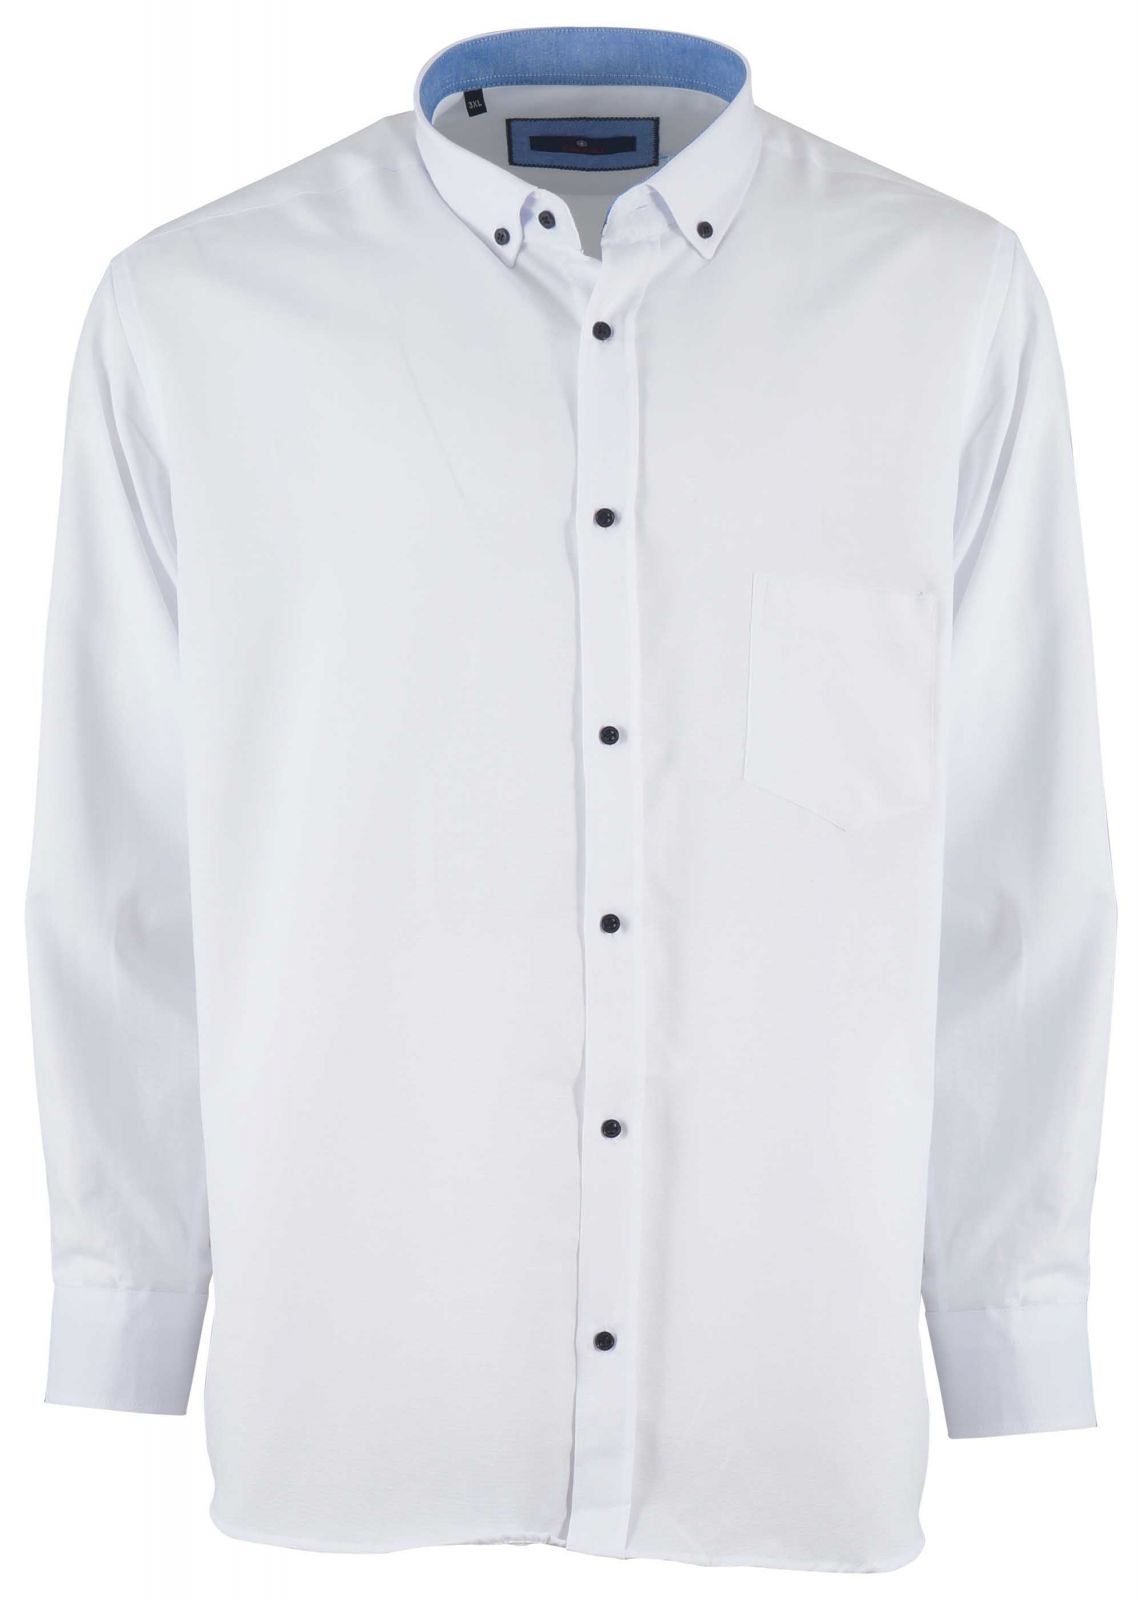 Aνδρικό πουκάμισο με τσεπάκι & κουμπιά στο γιακά. ΛΕΥΚΟ